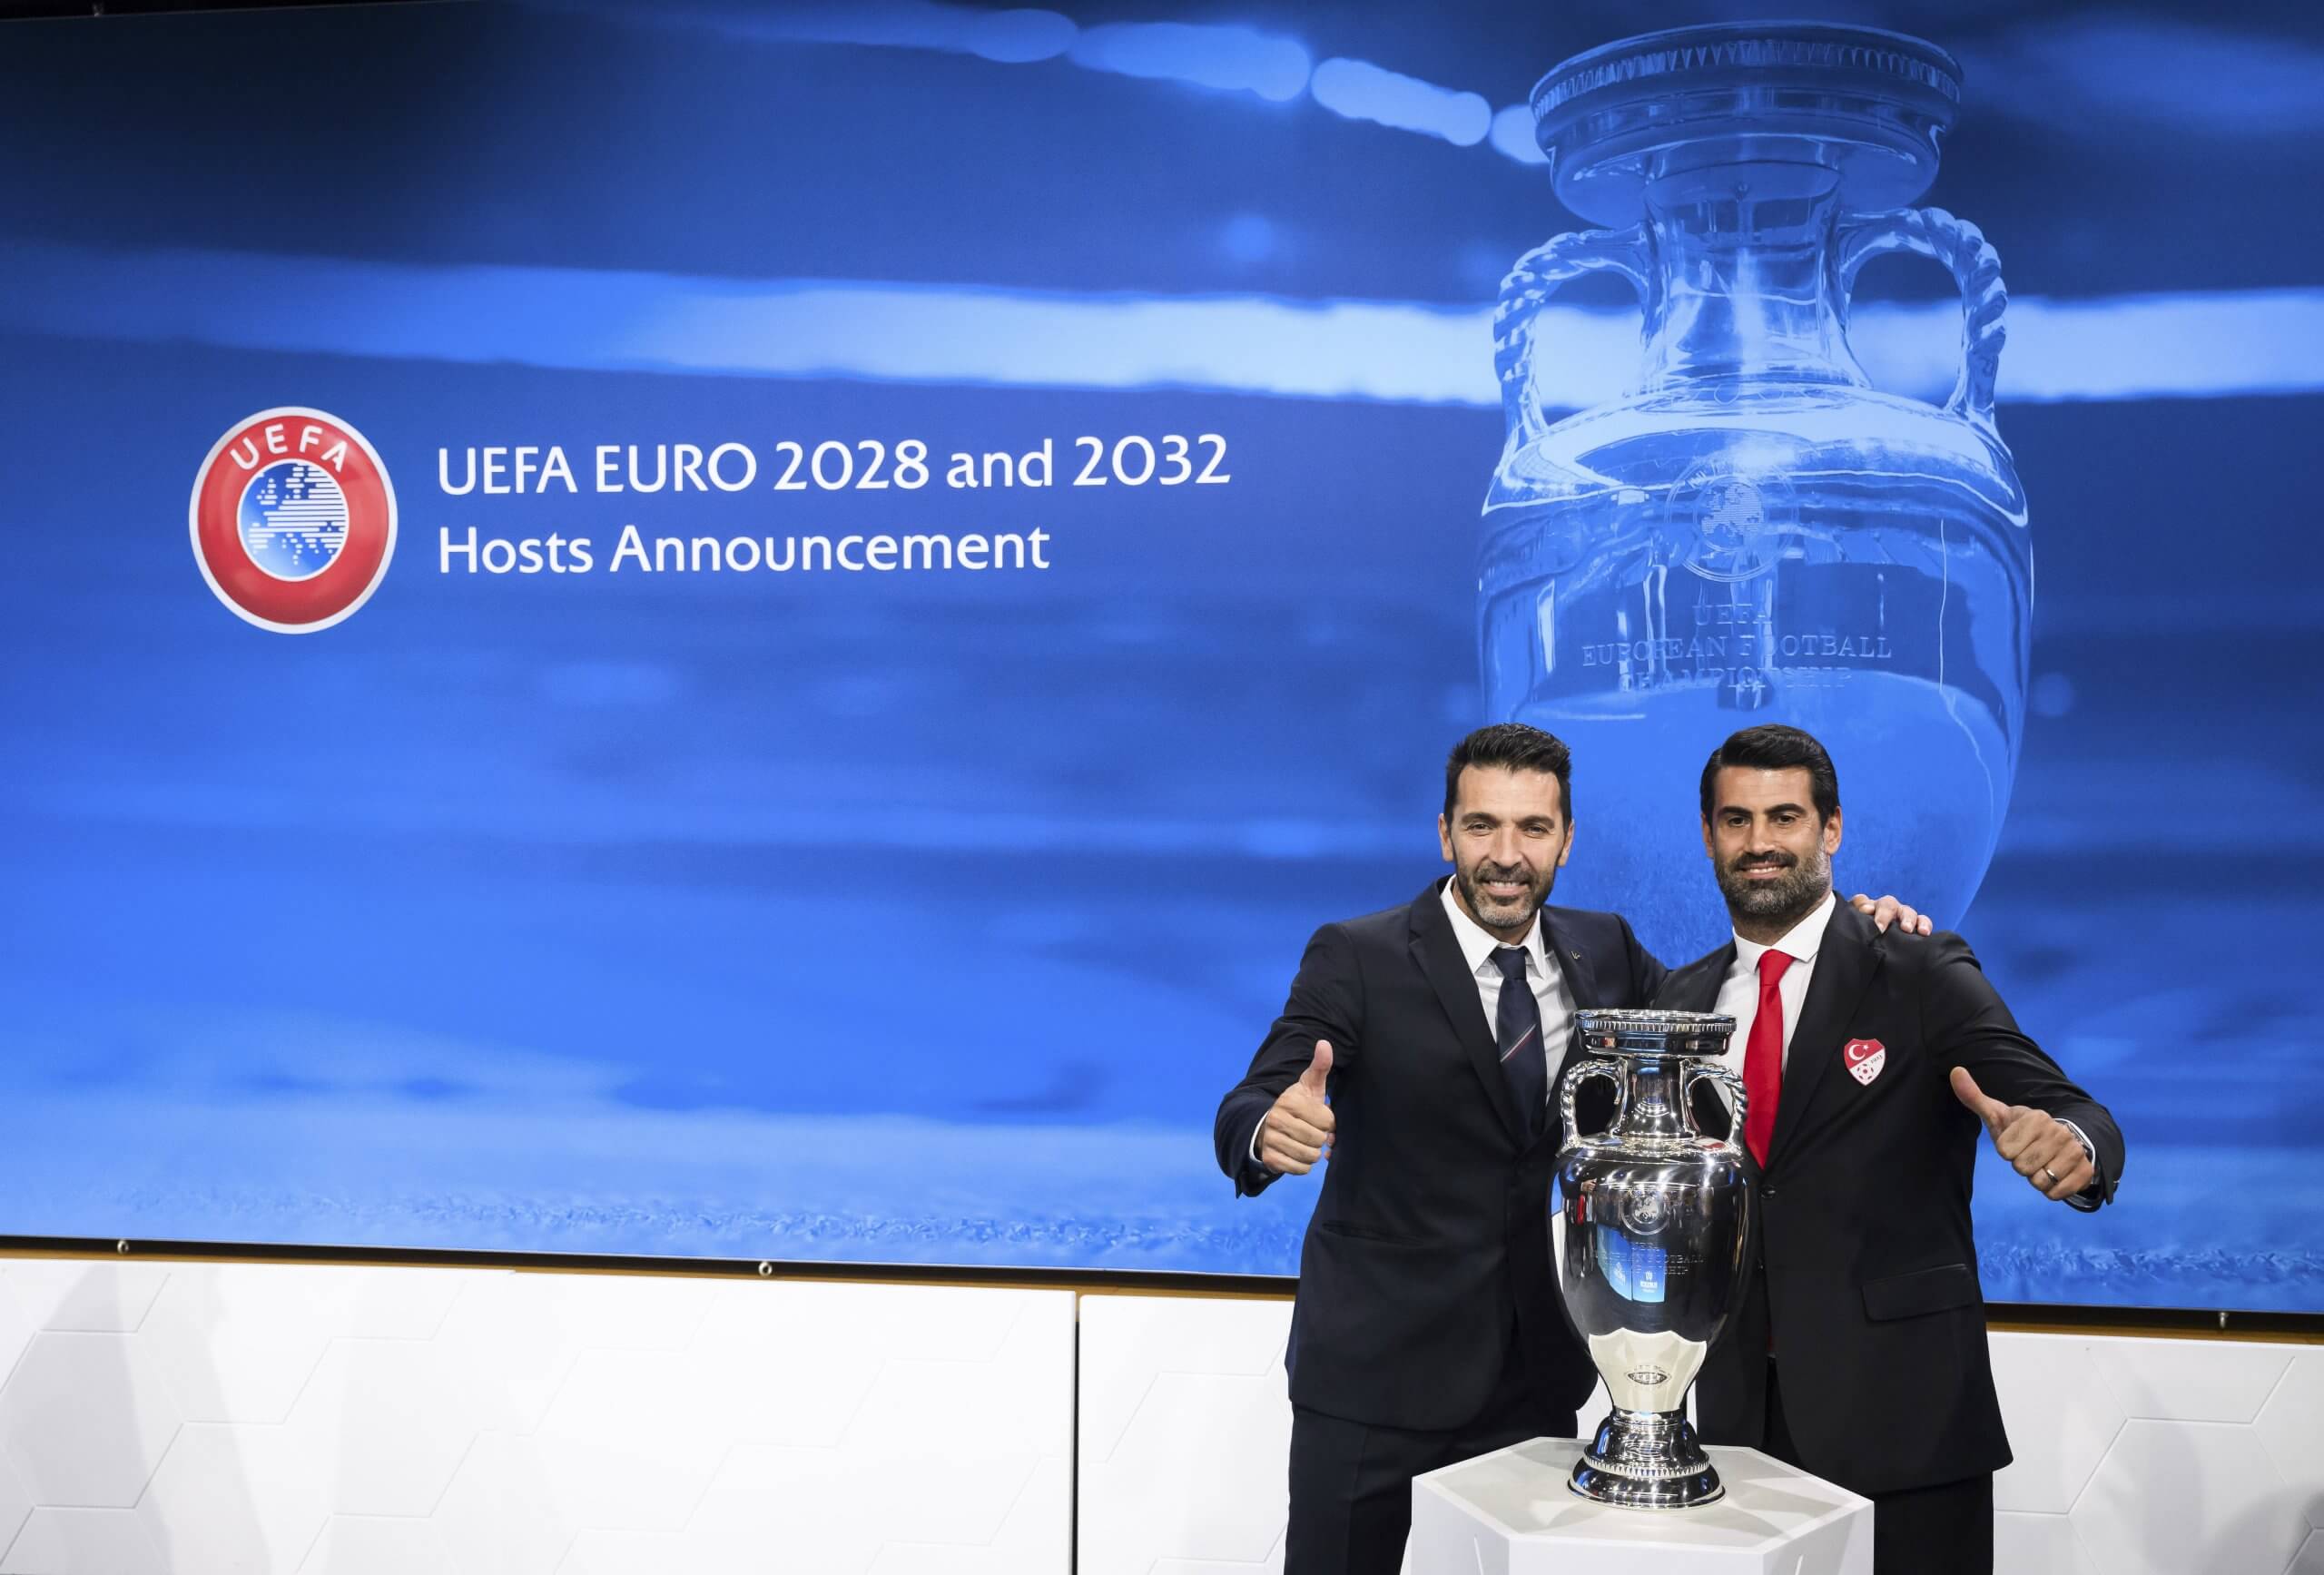 УЕФА ЕВРО 2028 и УЕФА ЕВРО 2032